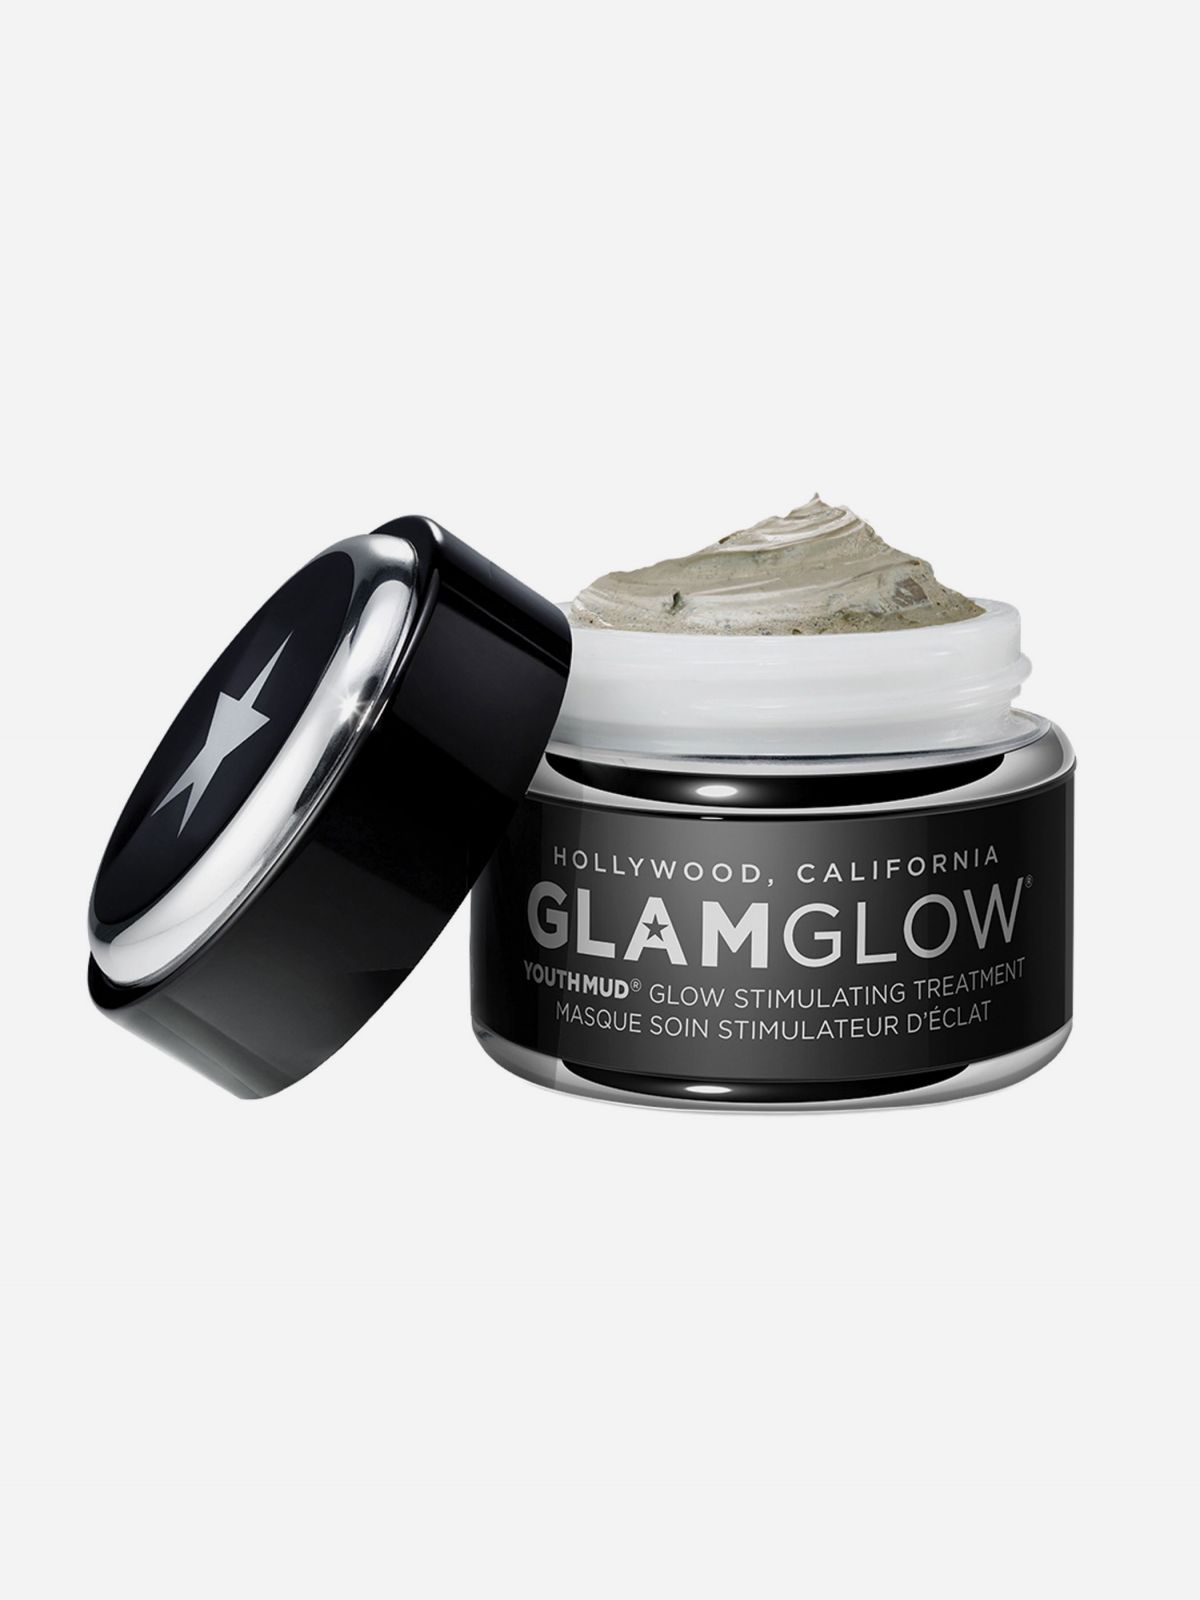  מסכת בוץ לעור זוהר באופן מיידי Youthmud Glow Stimulating Treatmeant של GLAMGLOW